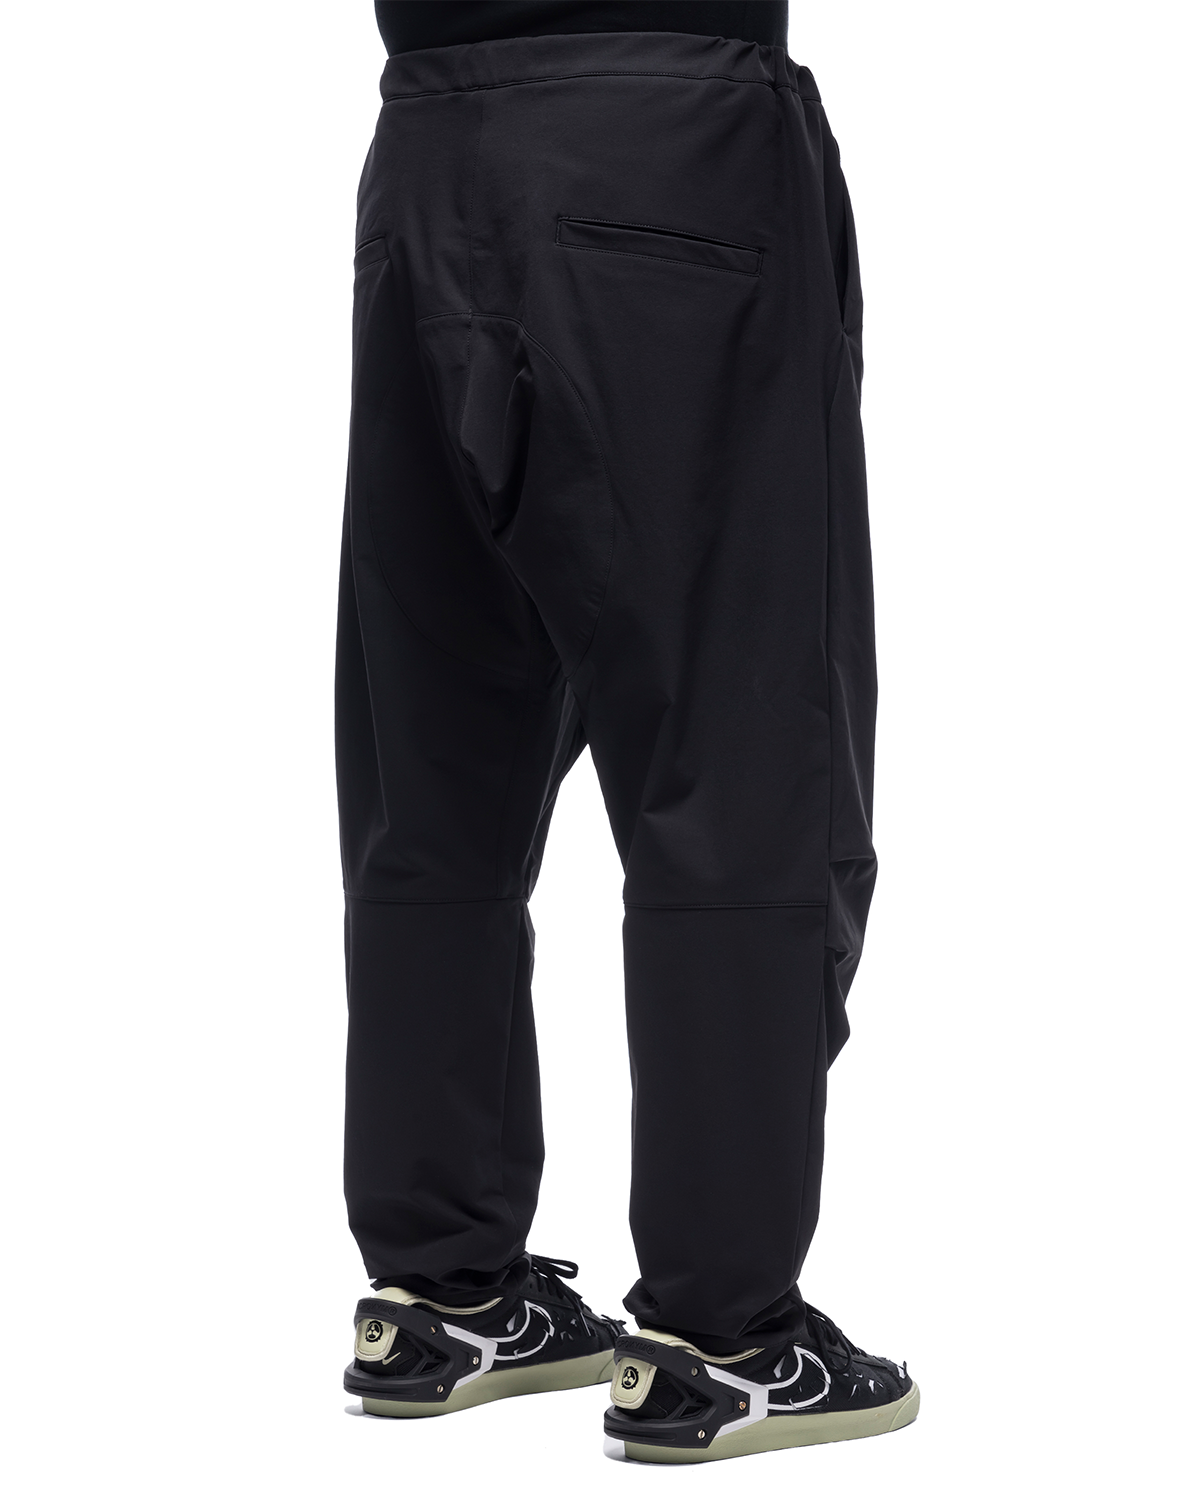 P15-DS Pants Black